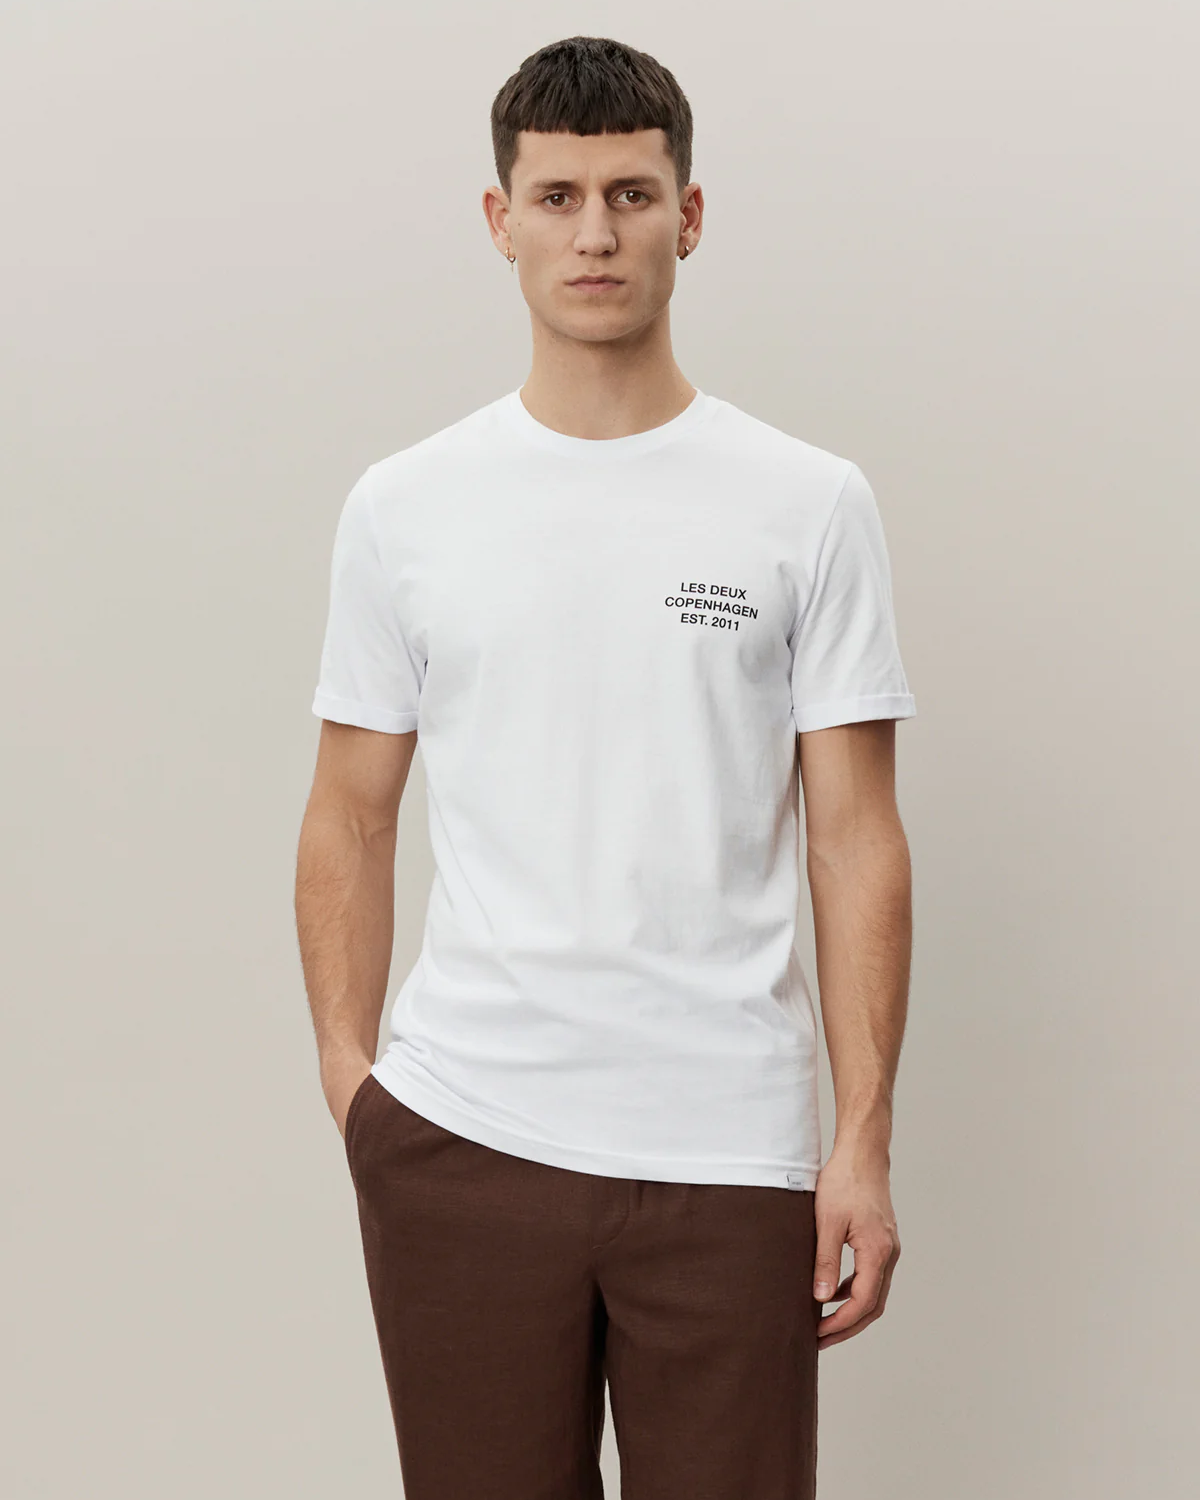 Copenhagen T-Shirt White/Black - Les Deux